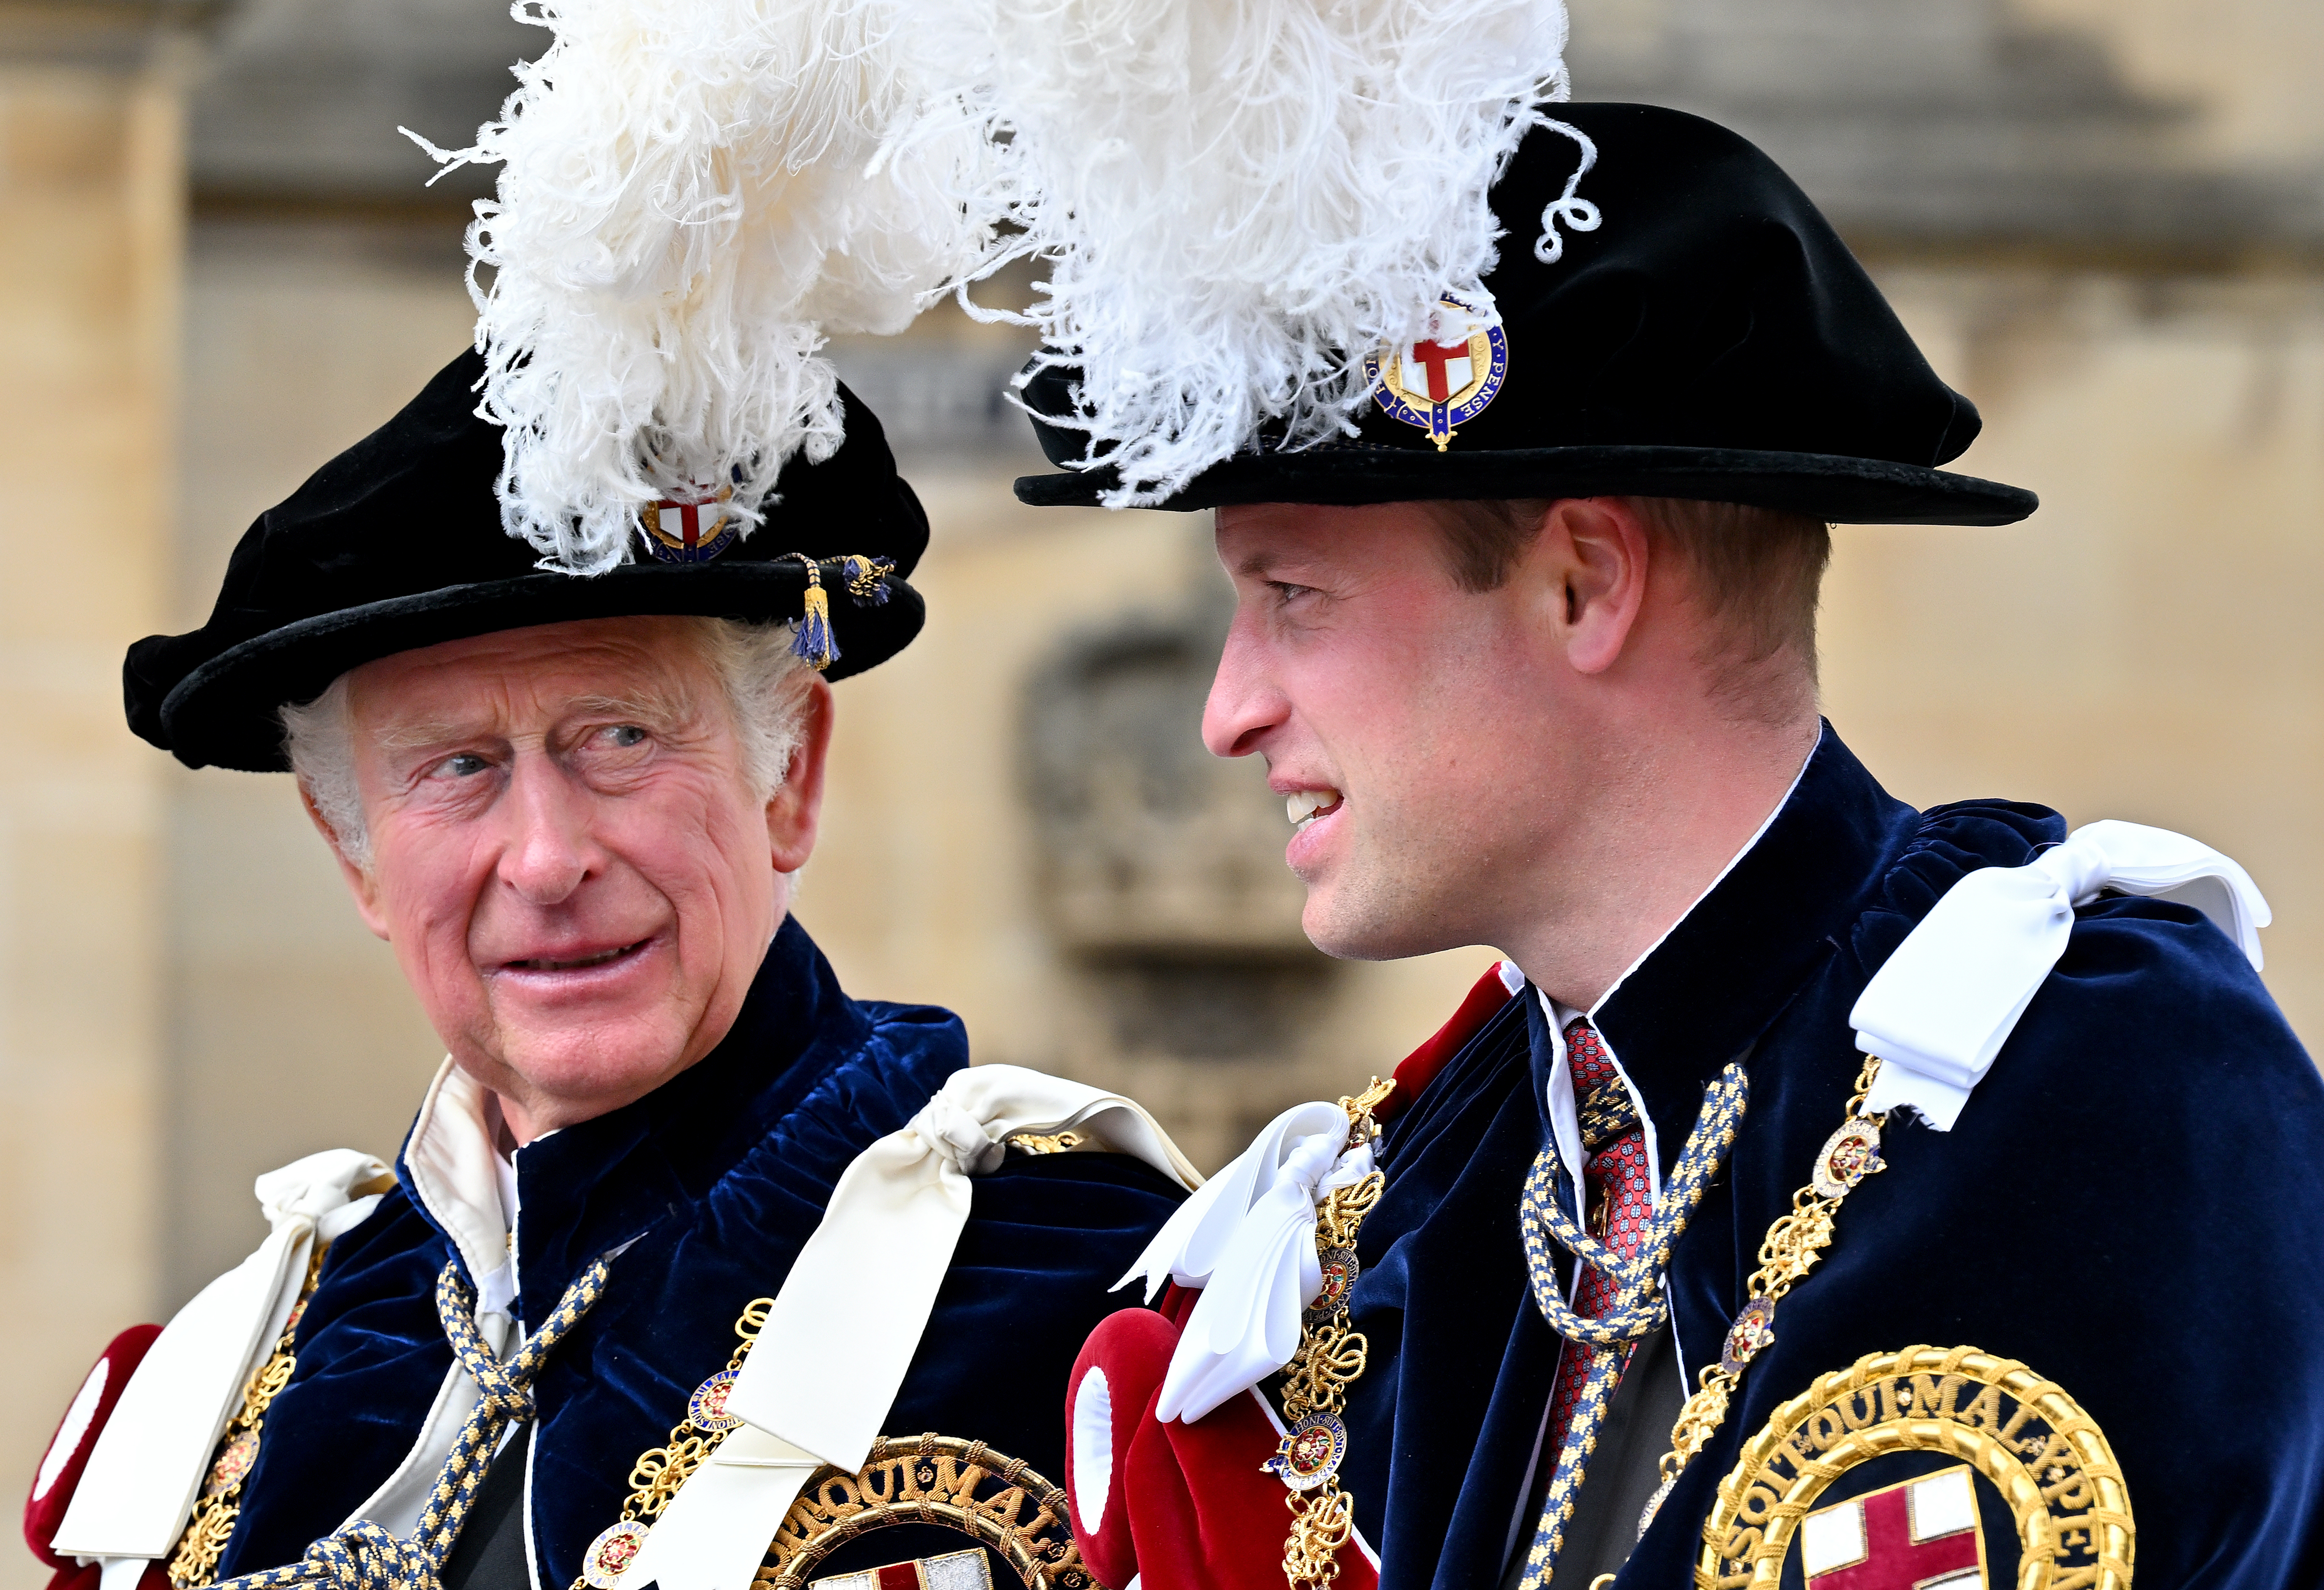 Le roi Charles III et le prince William assistent au service de l'Ordre de la Jarretière à la chapelle St George, au château de Windsor, le 13 juin 2022 à Windsor, en Angleterre | Source : Getty Images